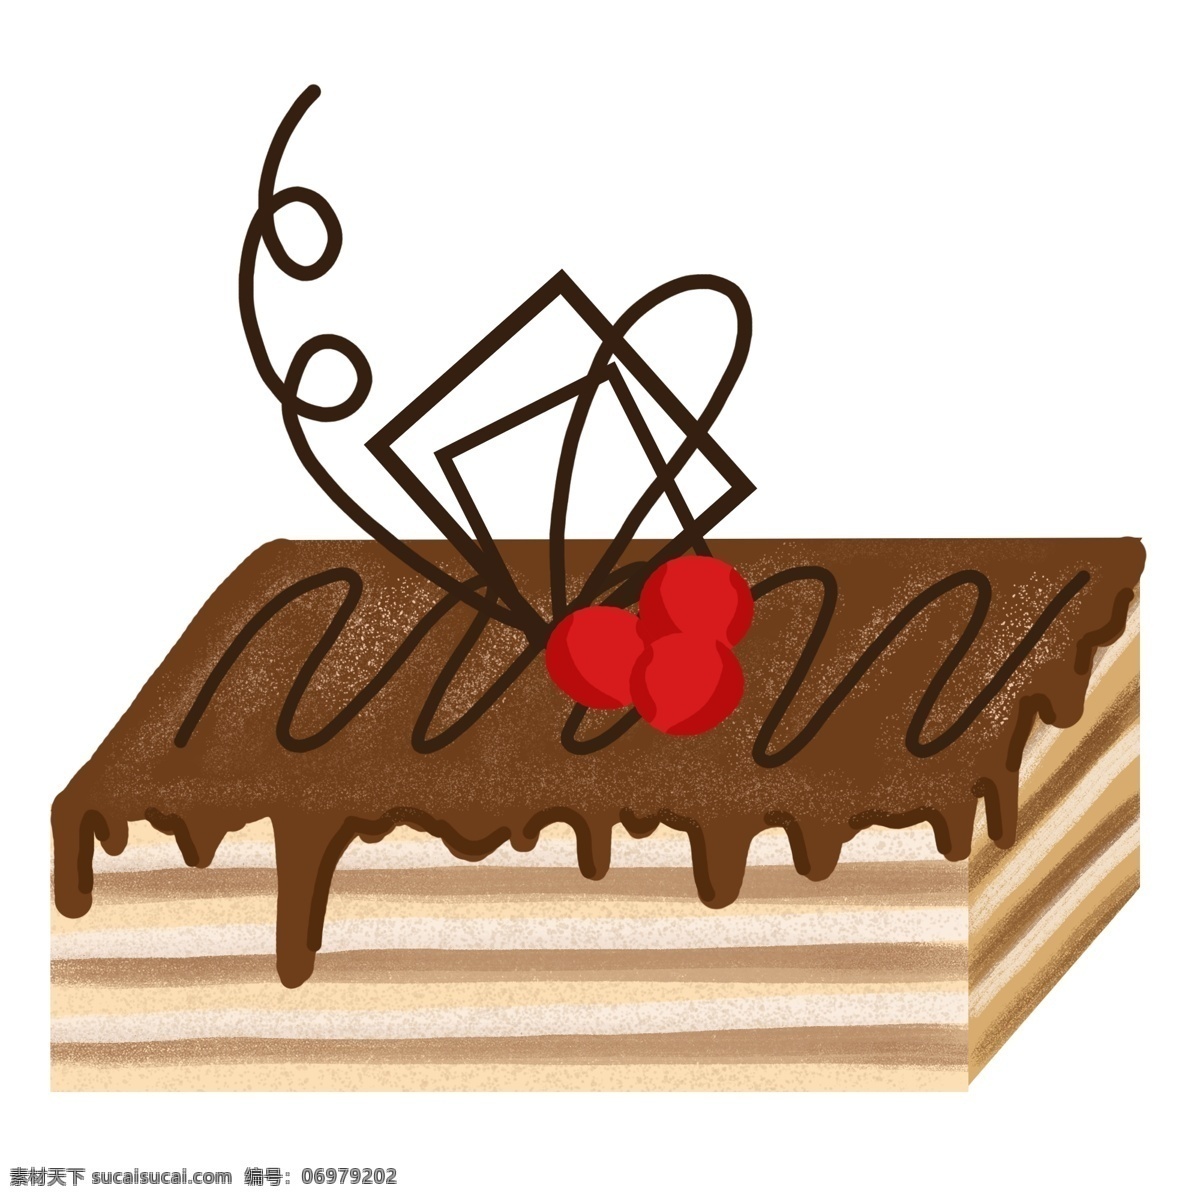 美味 巧克力 小 蛋糕 甜点 甜品 手绘 方块小蛋糕 方块 巧克力点心 蛋糕甜点 甜点手绘蛋糕